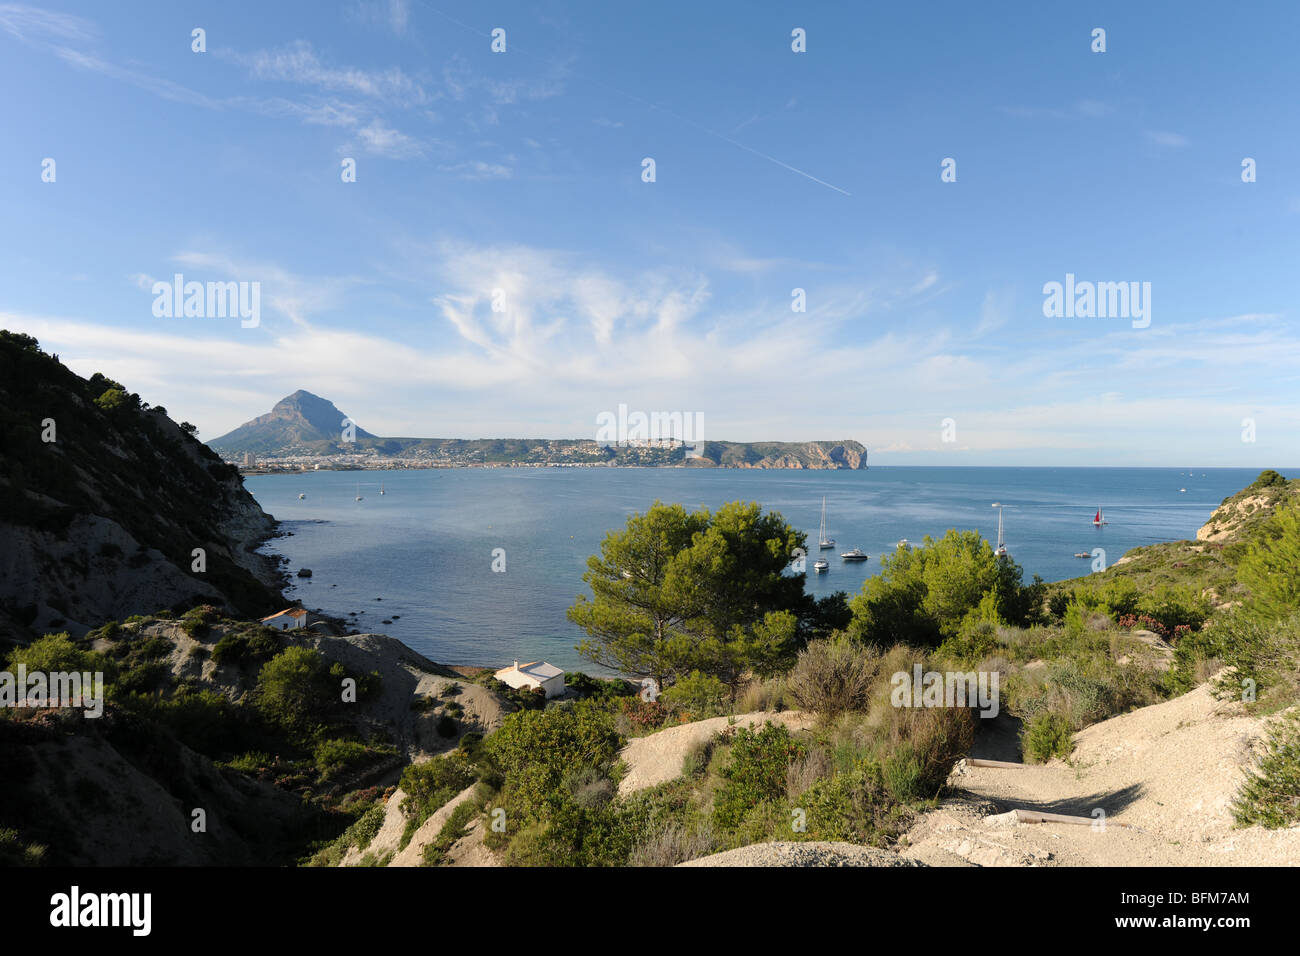 view from Cap Prim towards Montgo & Cabo de San Antonio, Javea / Xabia, Alicante Province, Comunidad Valenciana, Spain Stock Photo